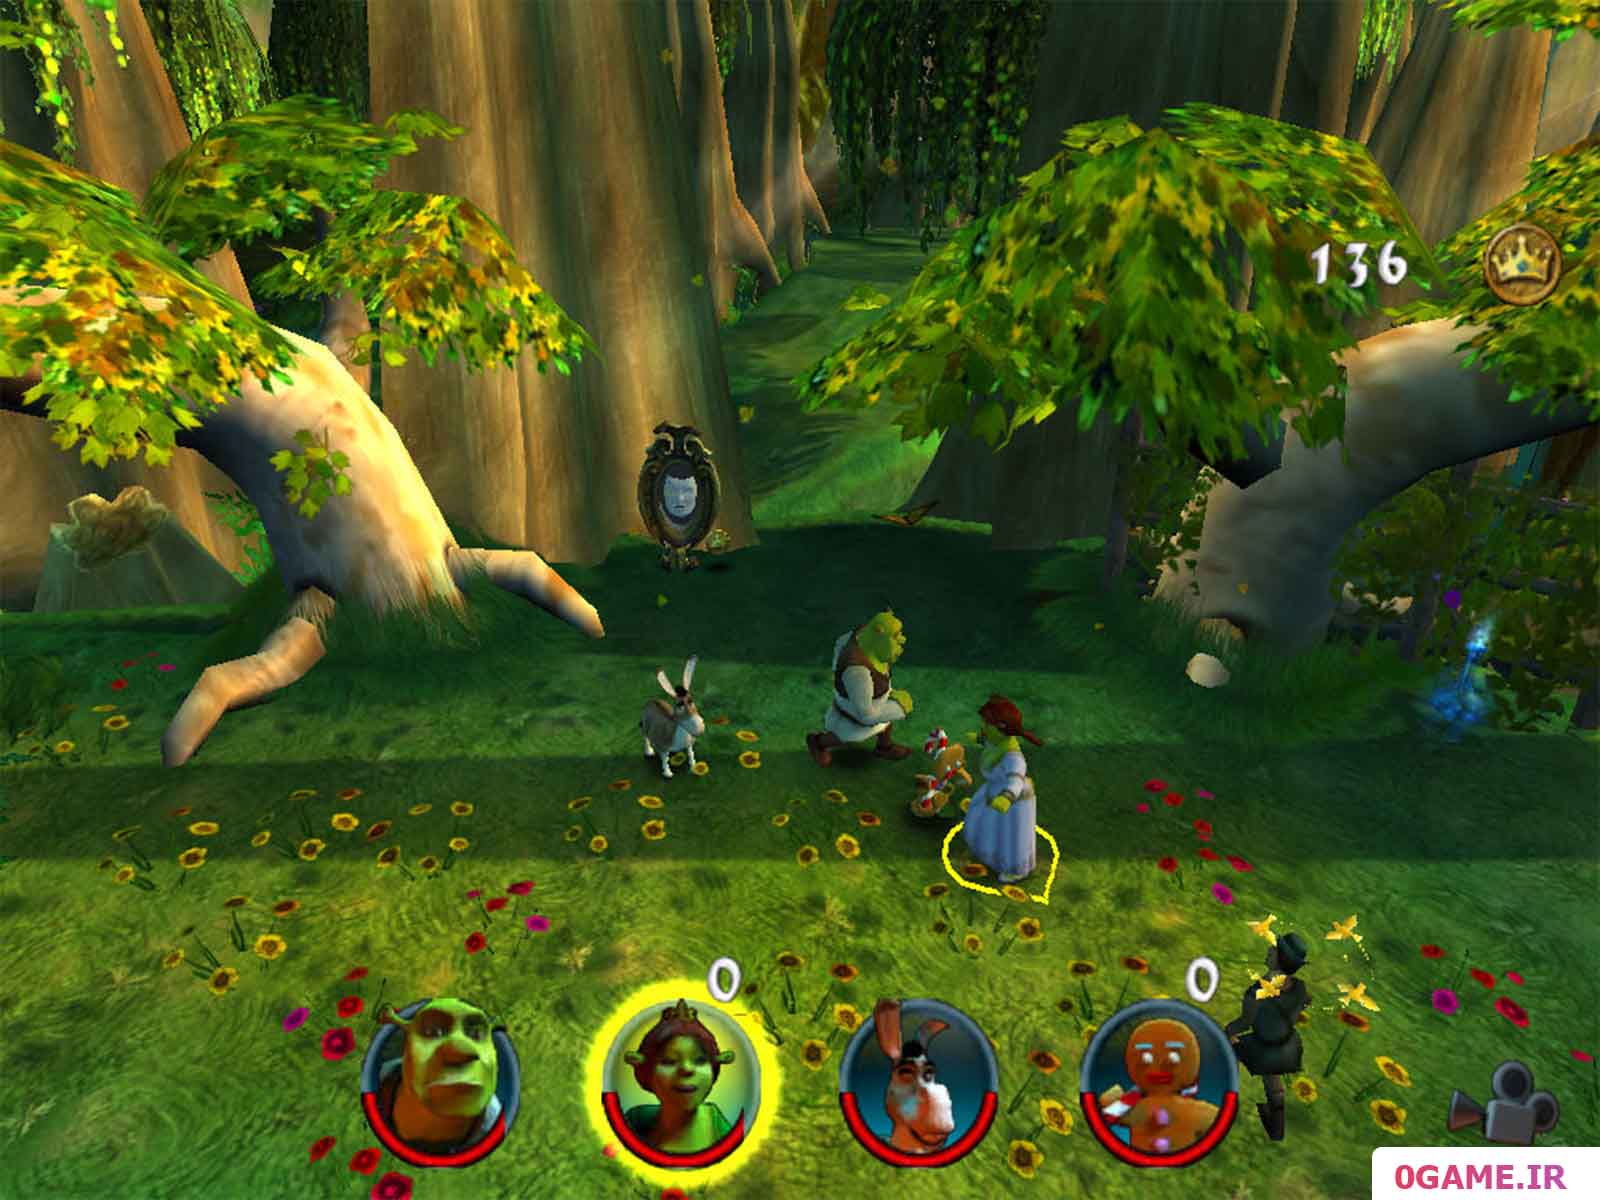  دانلود بازی شرک 2 اقدام تیمی (Shrek 2: Team Action) نسخه کامل